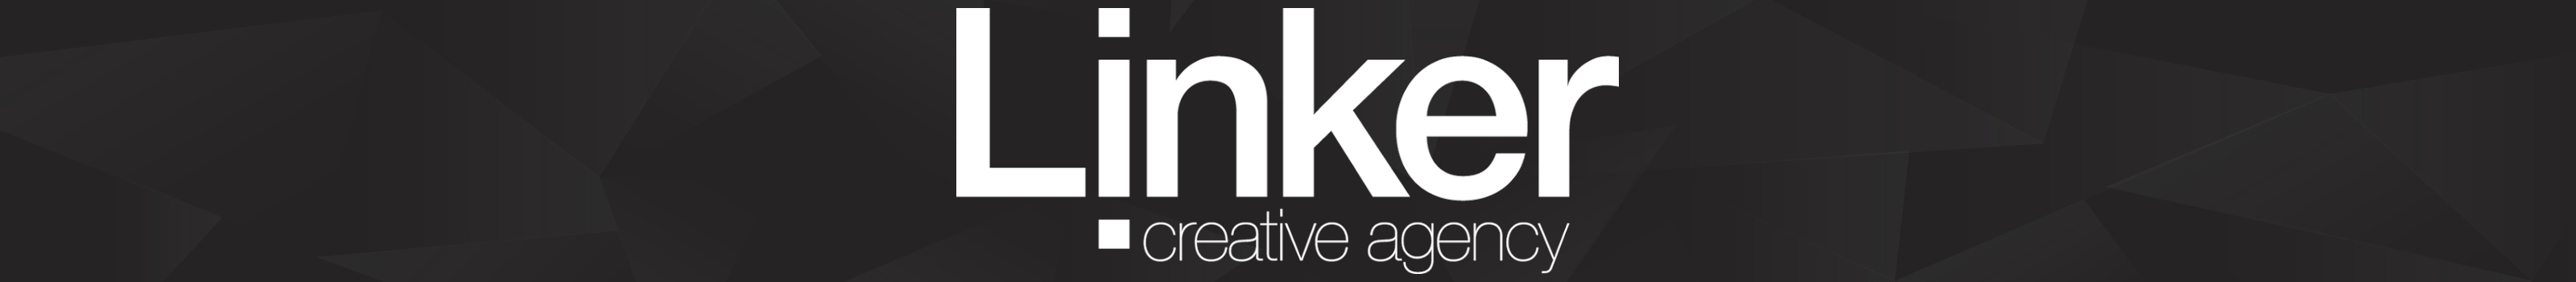 Linker Creatives profilbanner